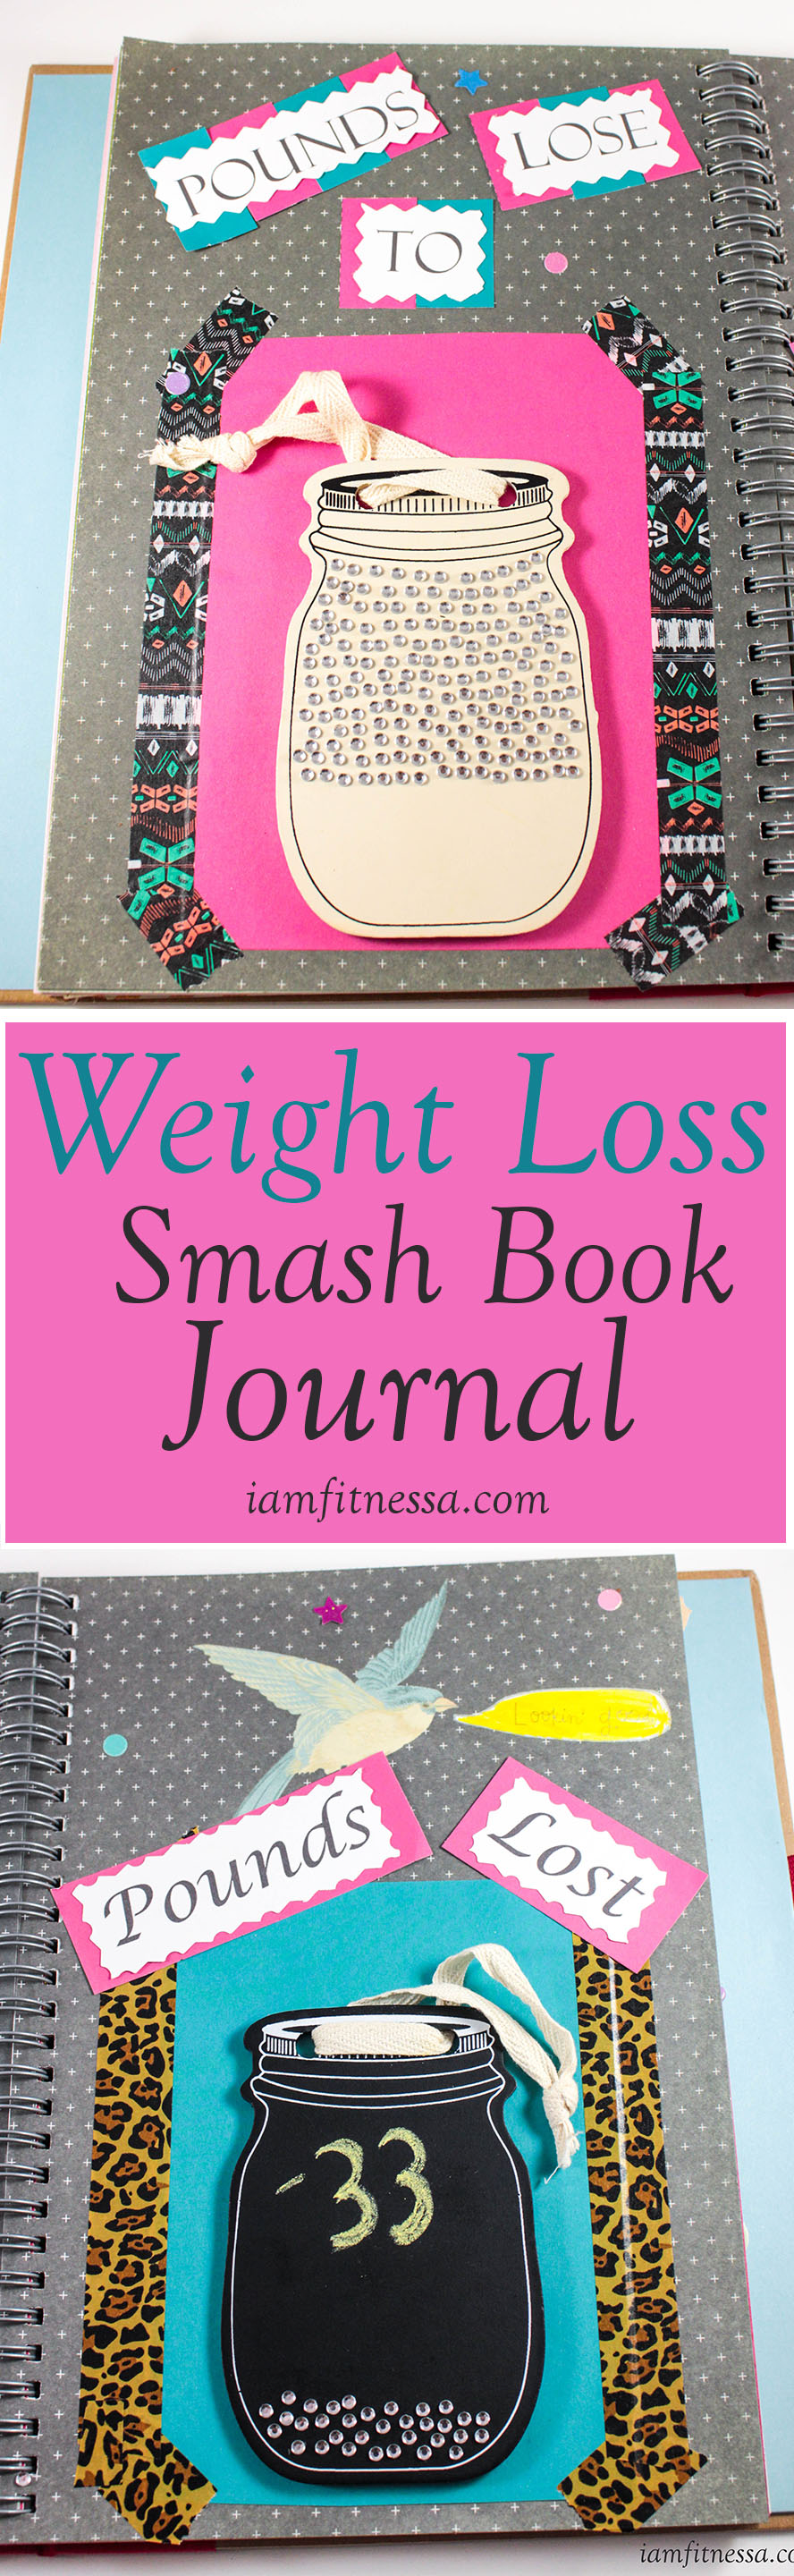 weight-loss-journal-i-am-fitnessa